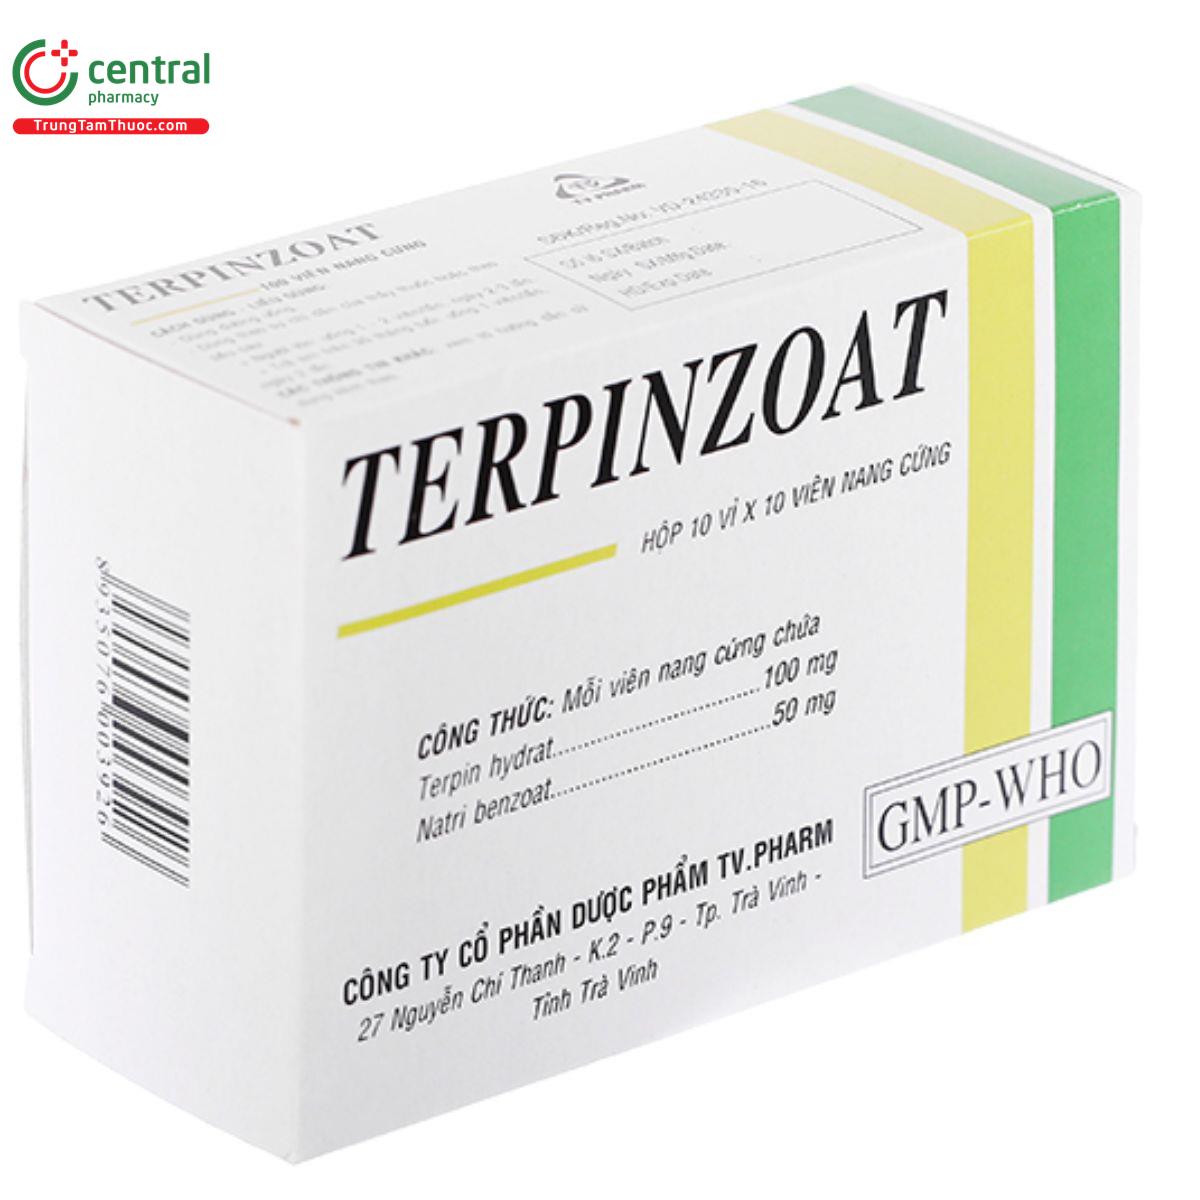 terpinzoat 2 R6677